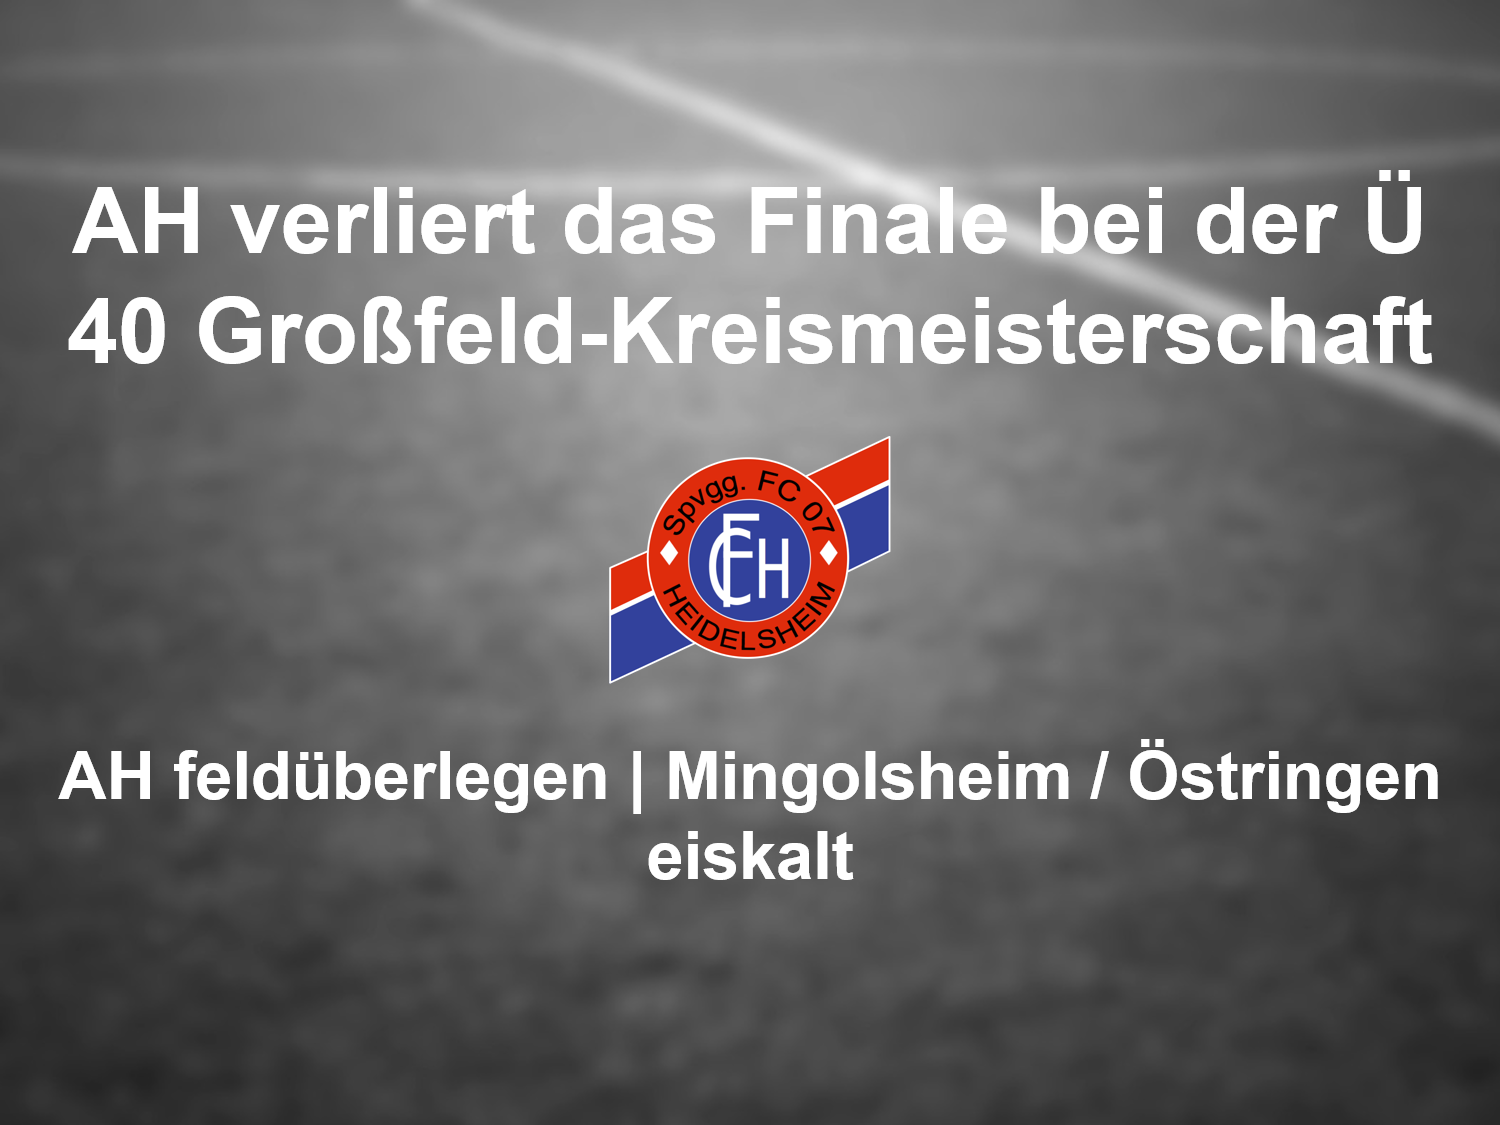 You are currently viewing Bittere Niederlage bei der Ü 40 Kreismeisterschaft im Großfeld für die FC 07 Heidelsheim AH